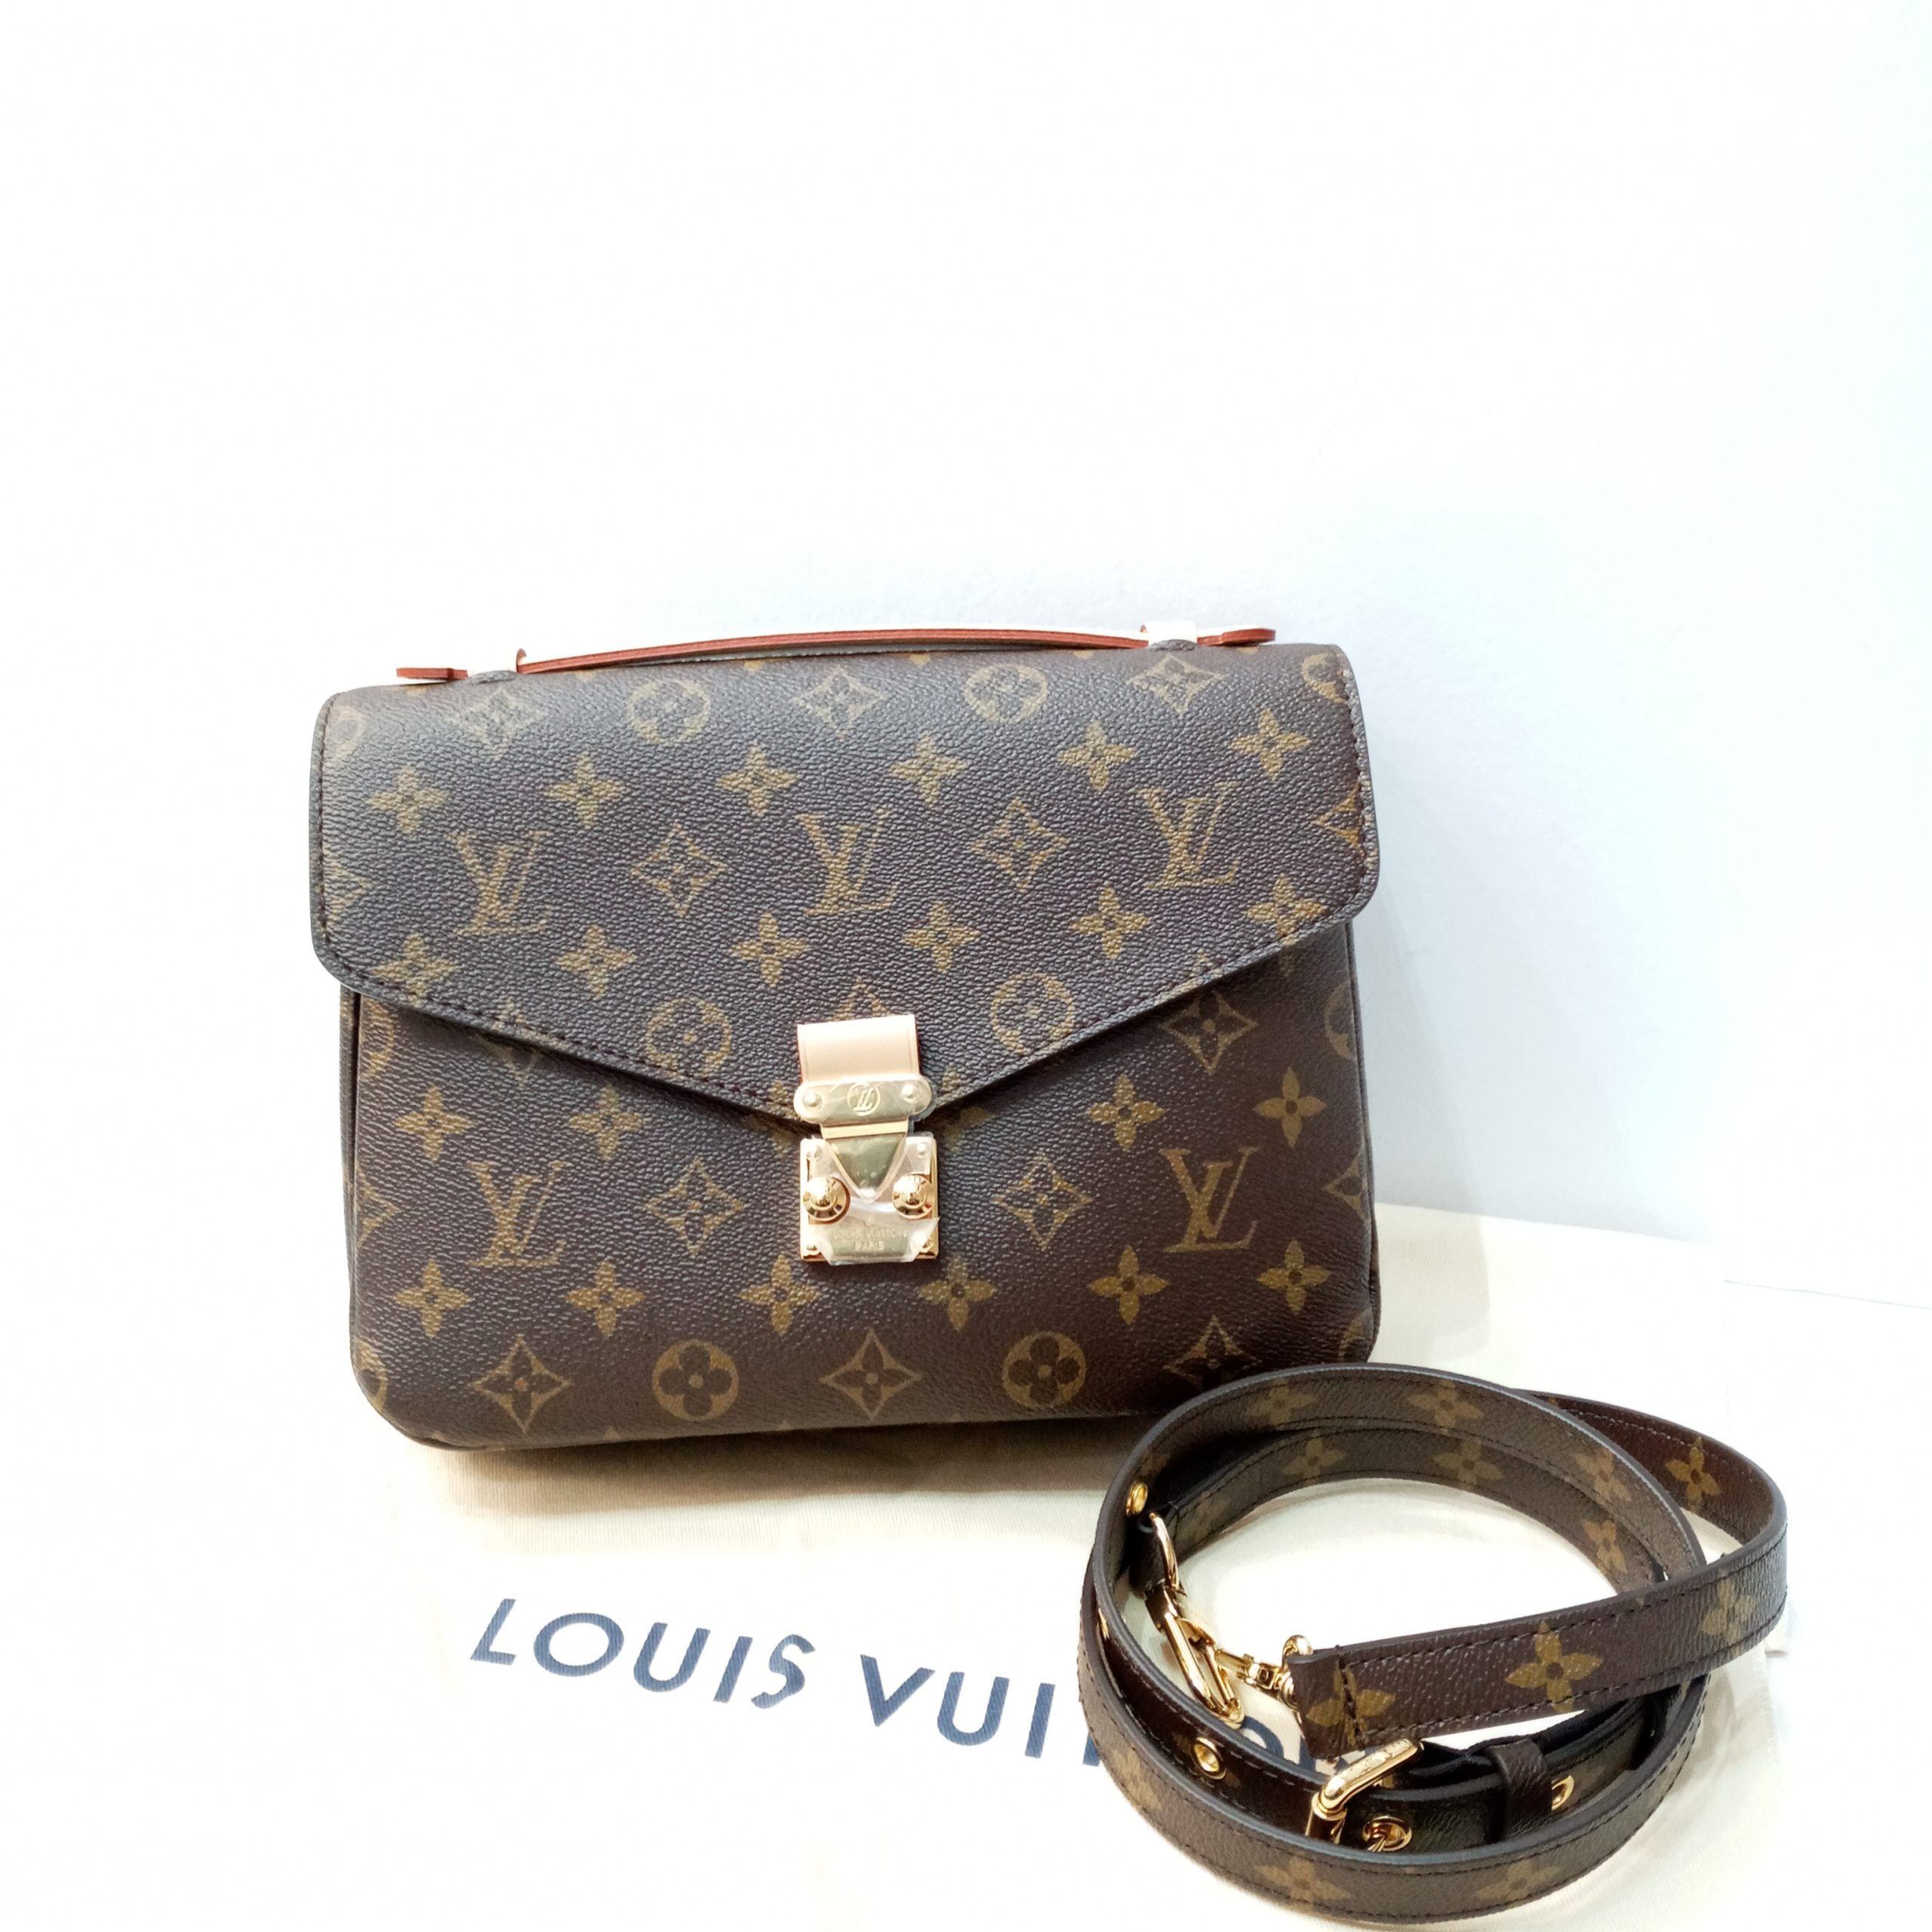 Louis Vuitton Pochette Metis Monogram Canvas Bag Purse 2020 M44875